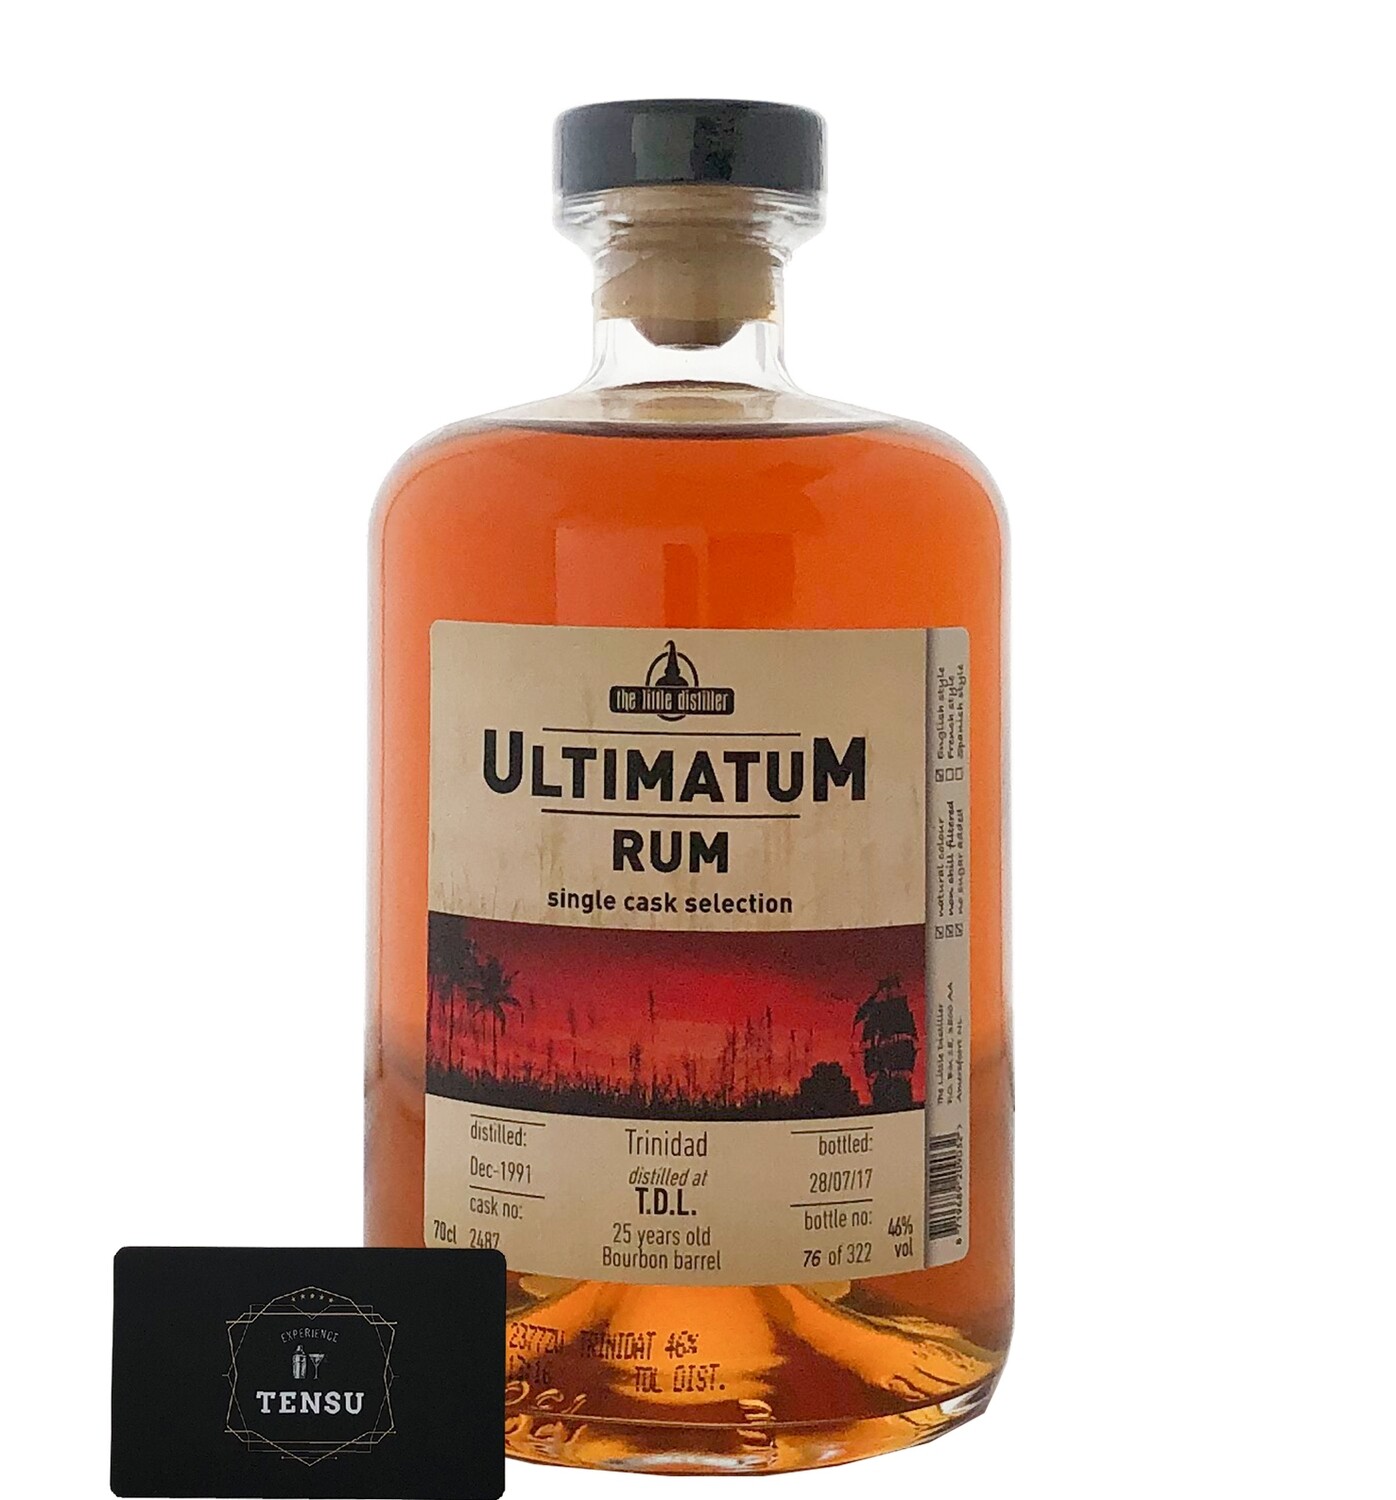 Angostura [TDL] 25 Years Old Trinidad Rum (1991-2017) "Ultimatum"